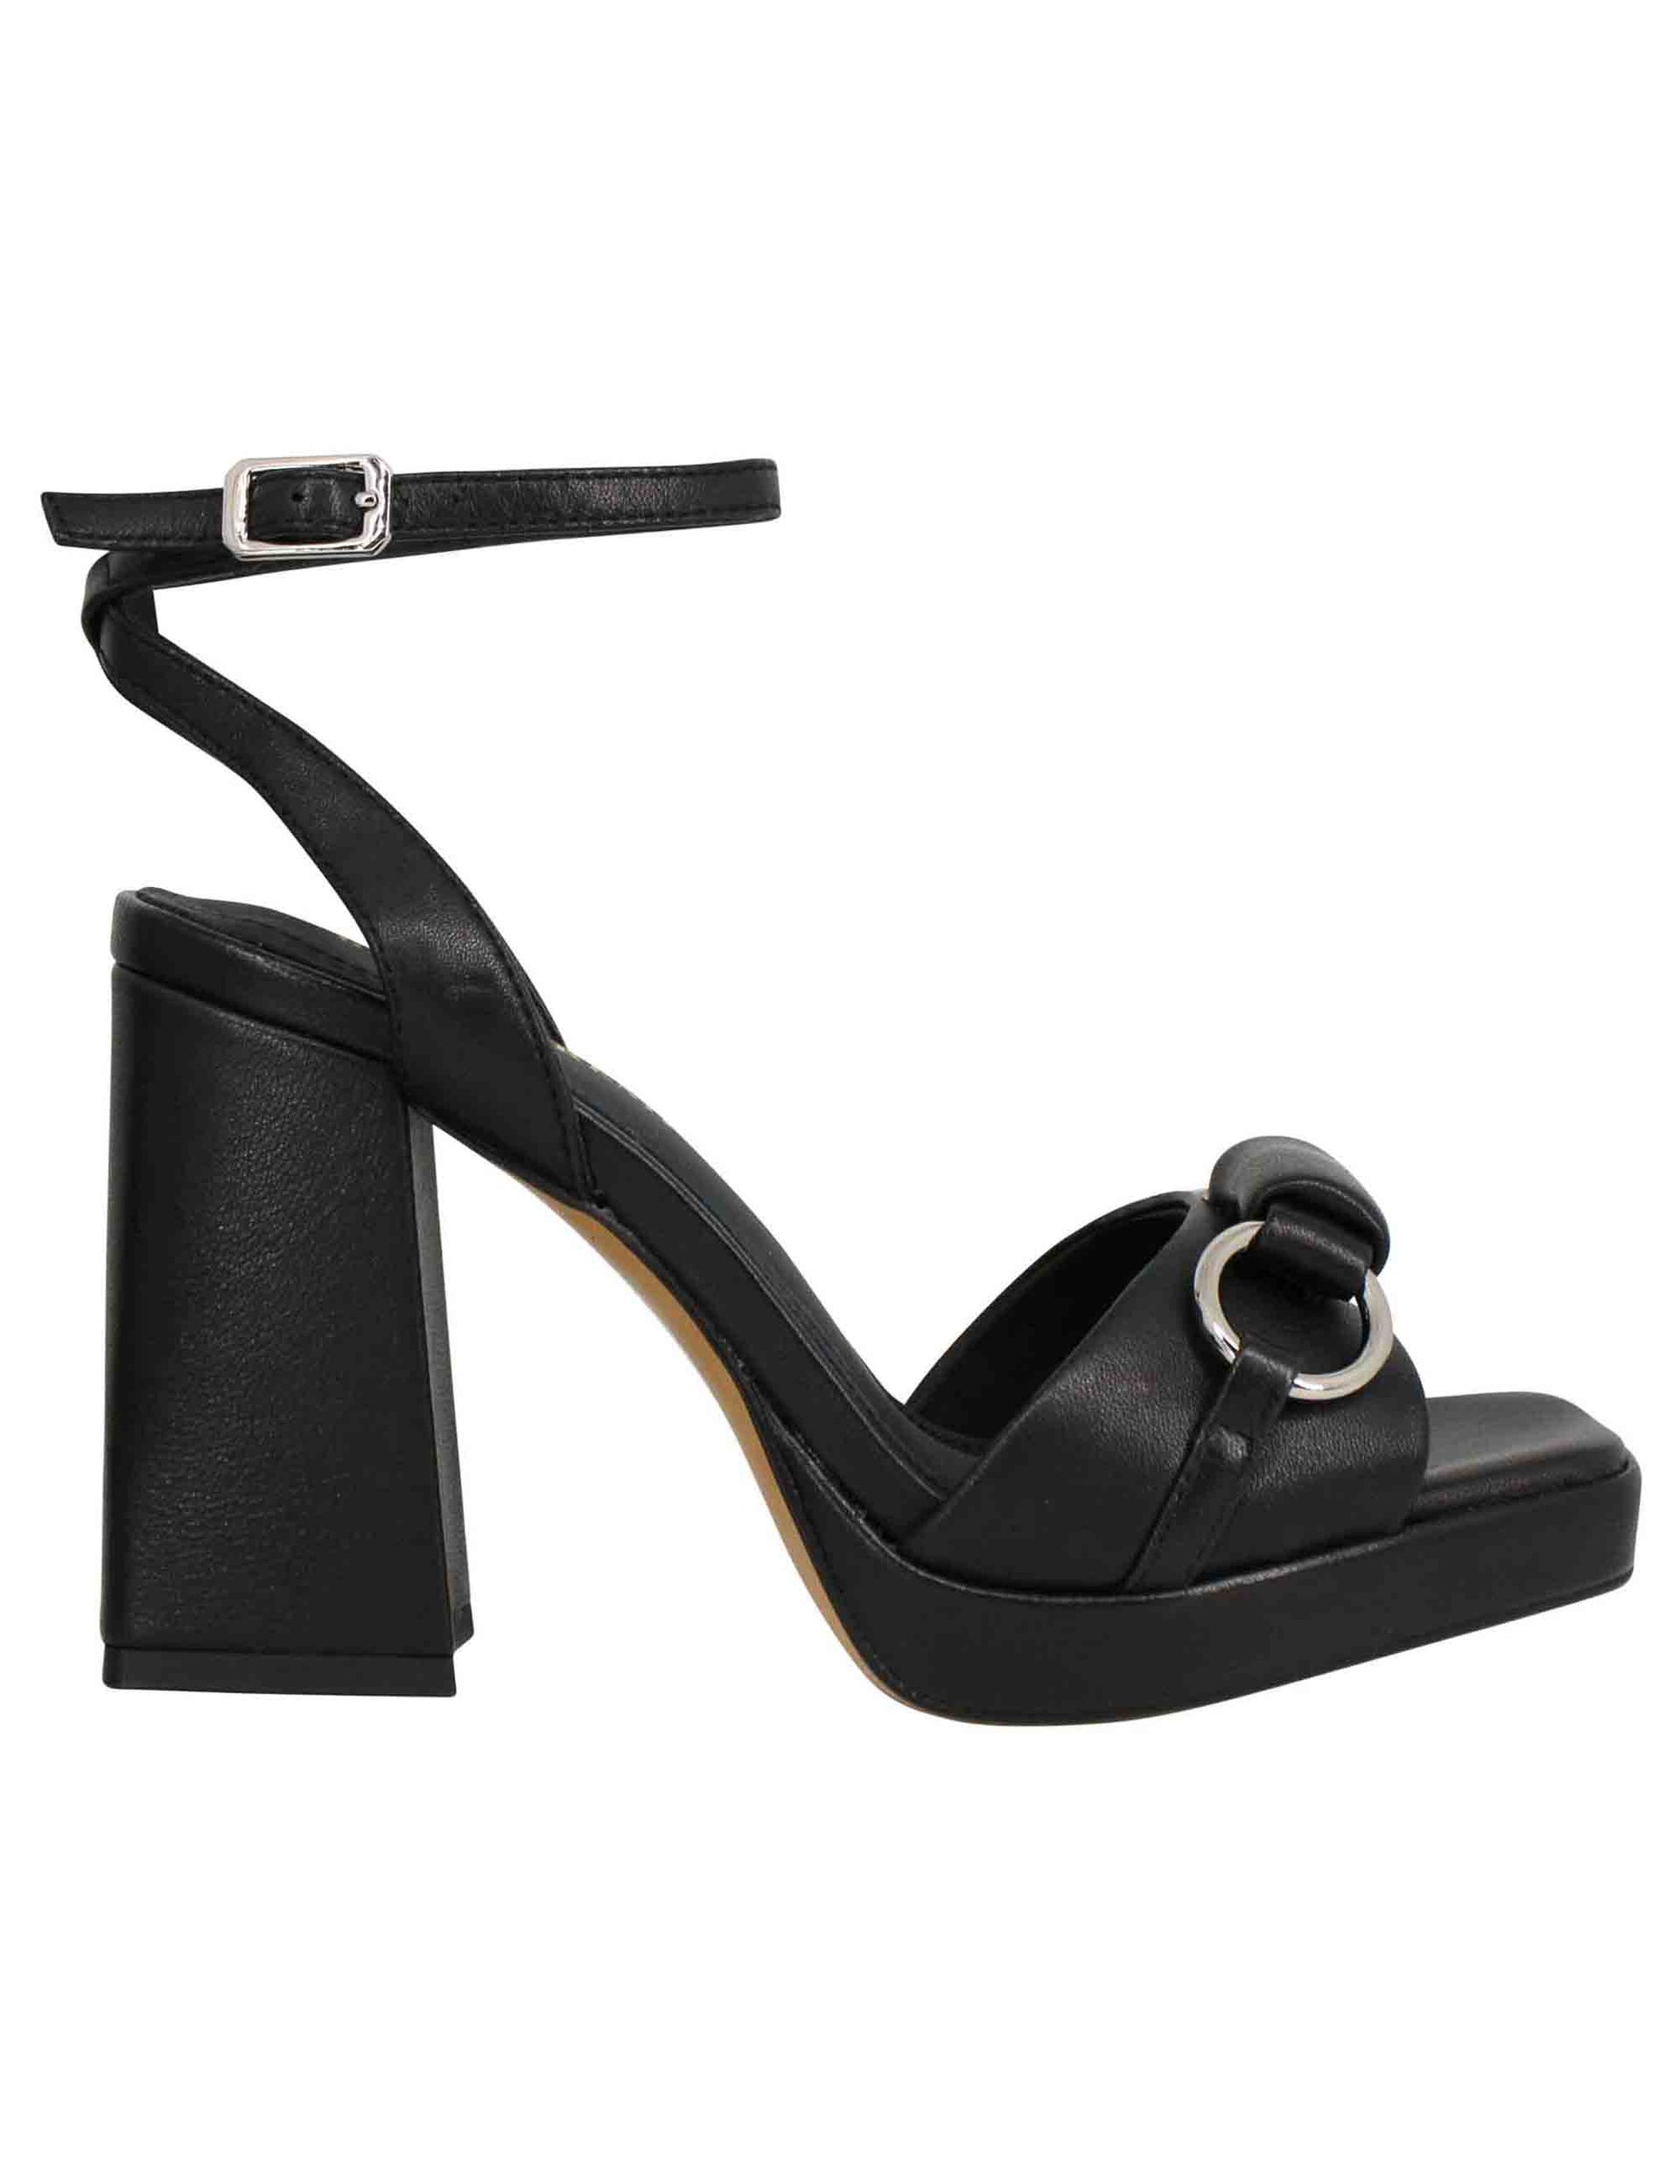 Sandali donna in pelle nera con cinturino alla caviglia tacco alto e plateau